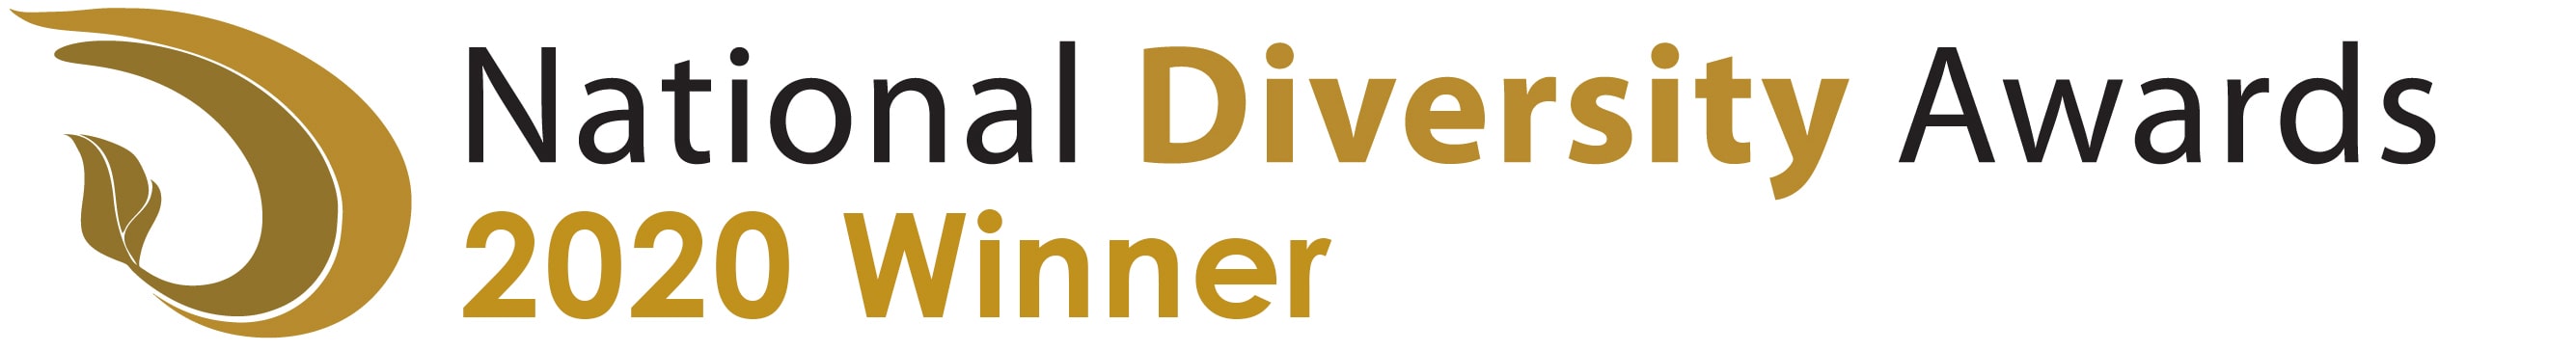 National Diversity Awards 2020 Winner